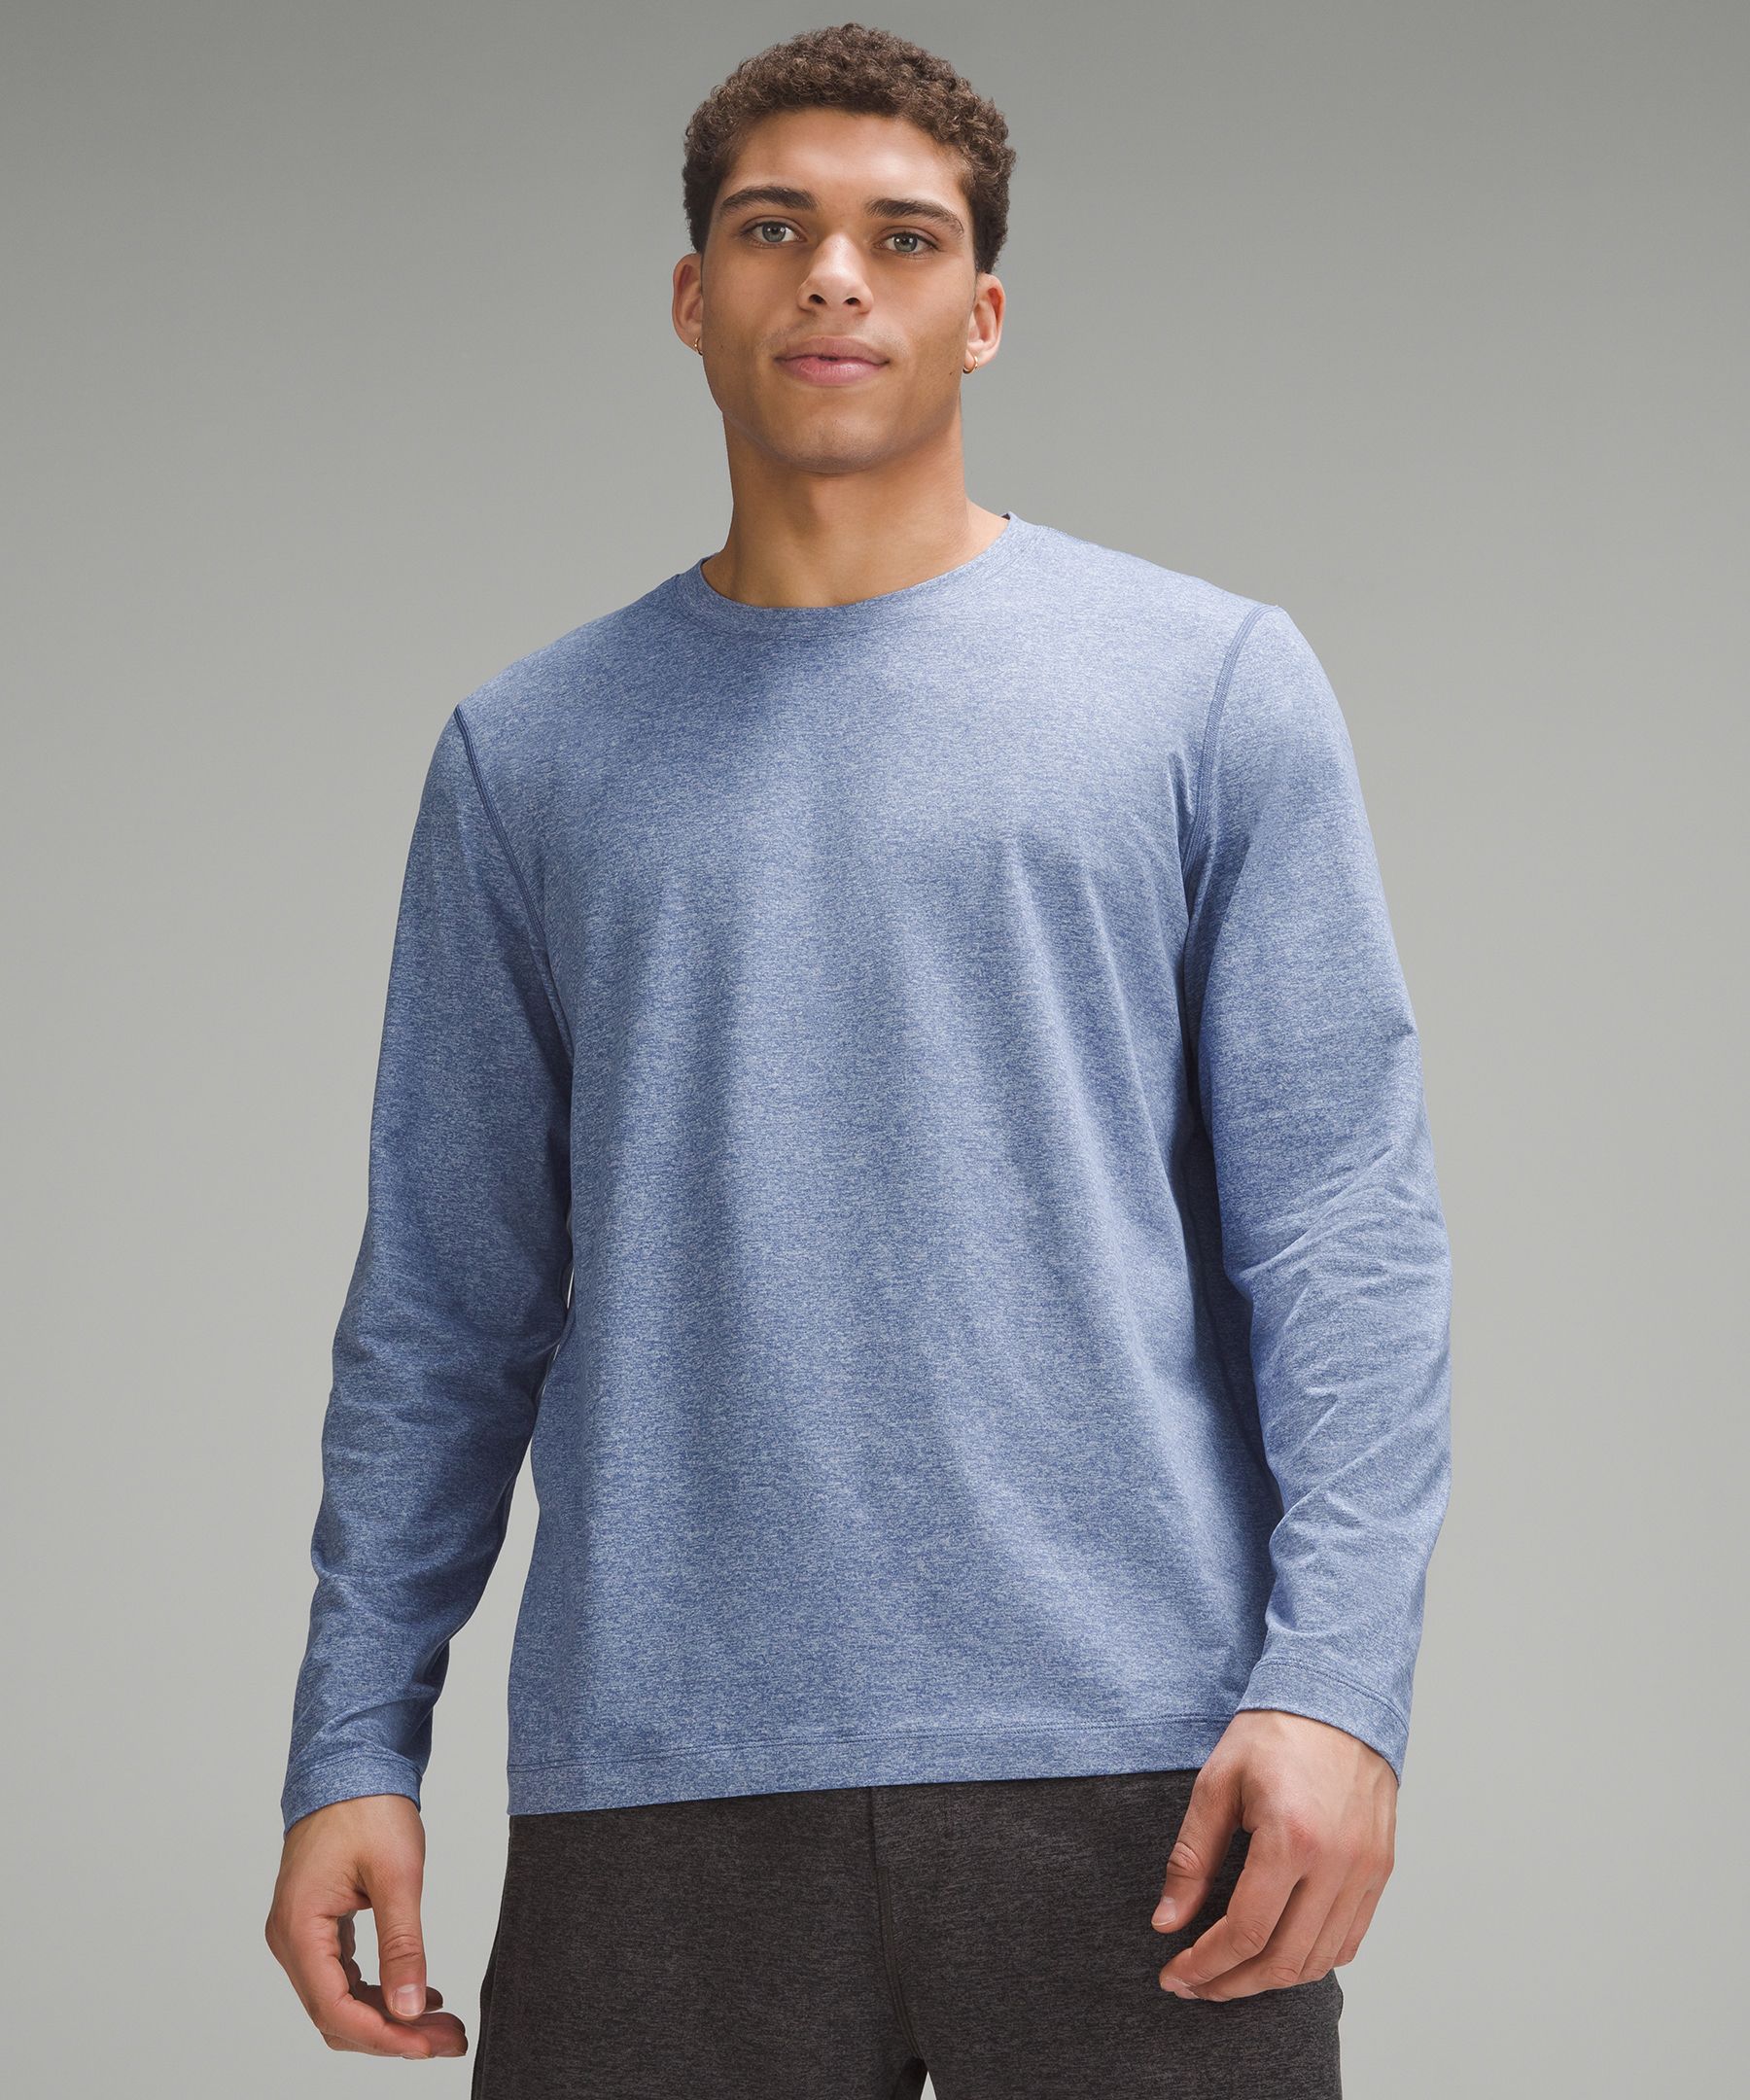 Soft Jersey Long-Sleeve Shirt